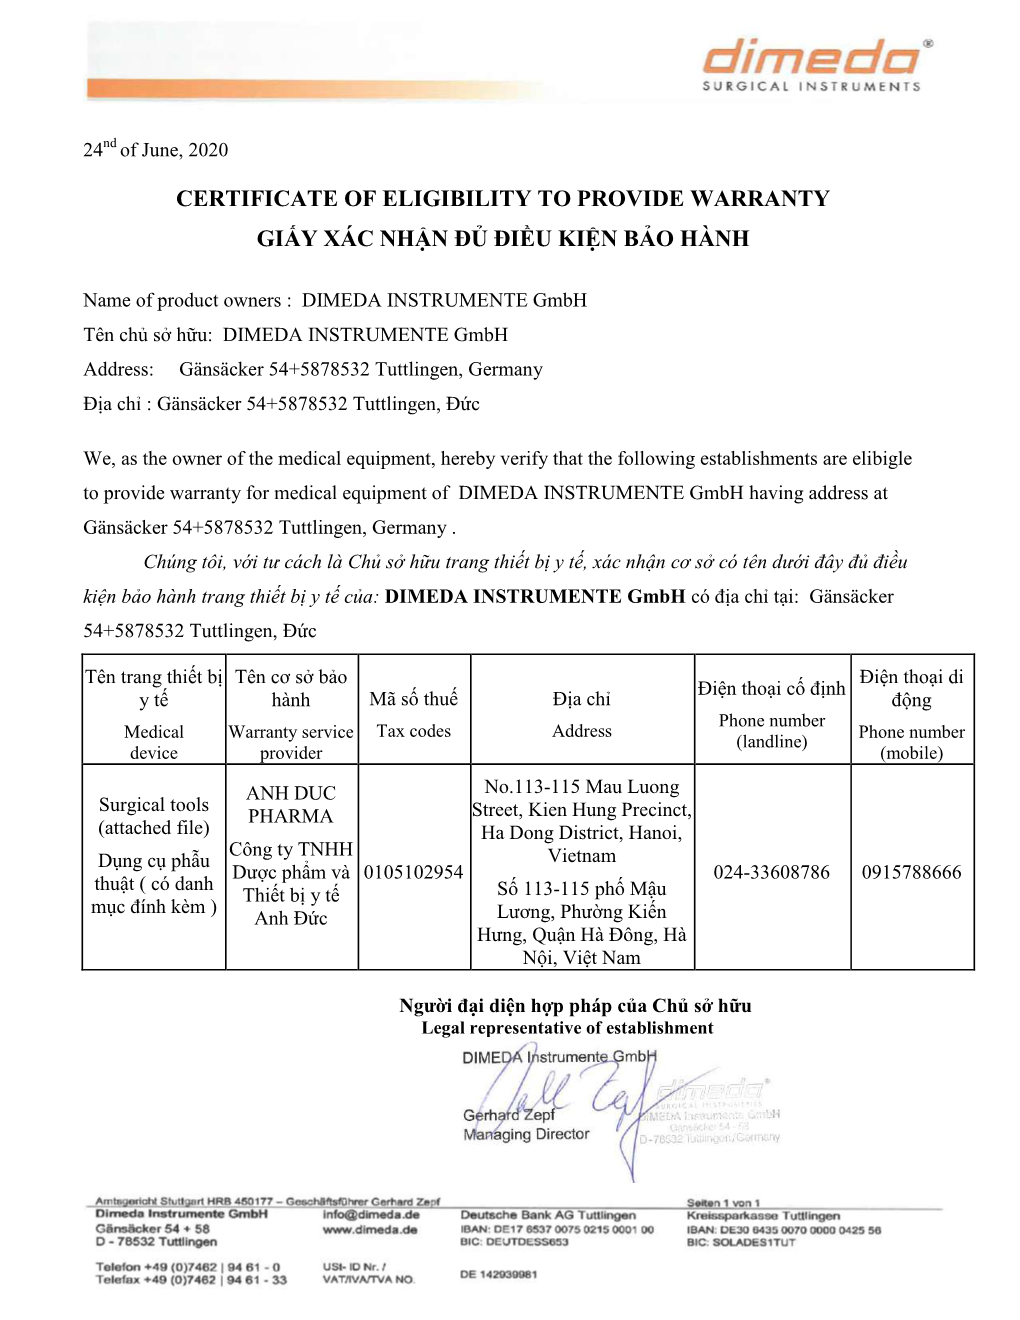 Certificate of Eligibility to Provide Warranty Giấy Xác Nhận Đủ Điều Kiện Bảo Hành